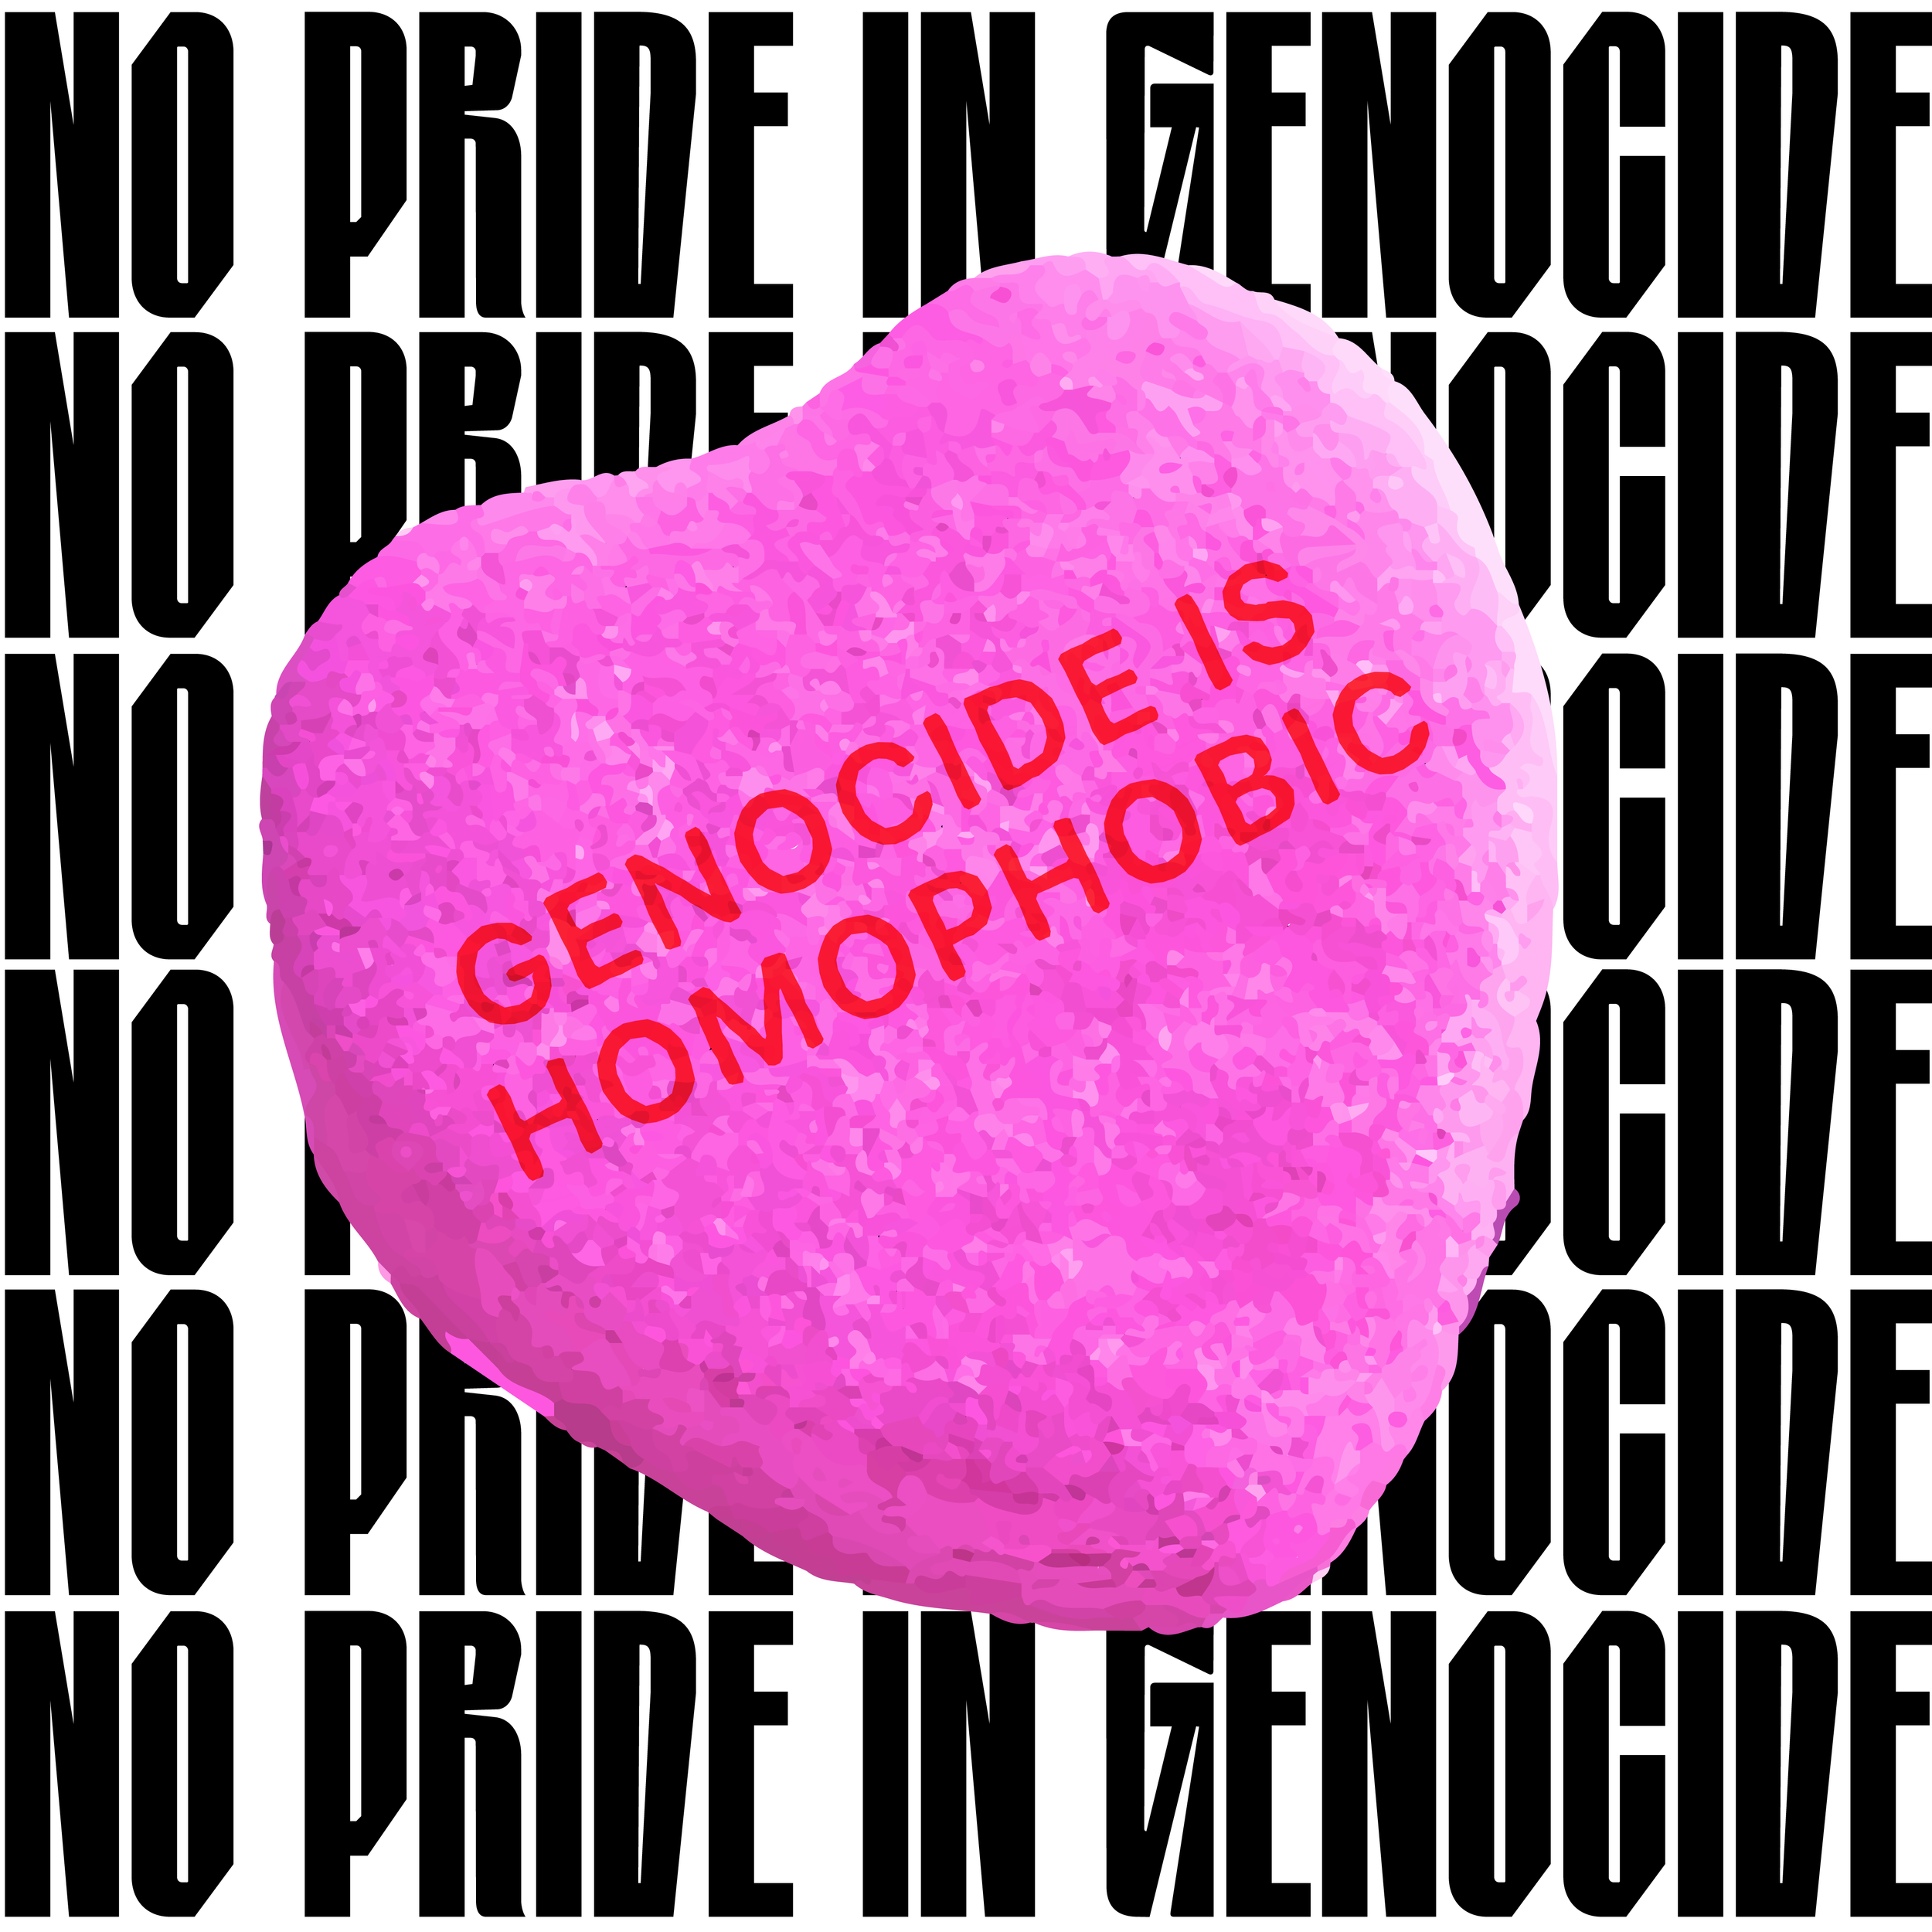 genocide-is-homophobic.png